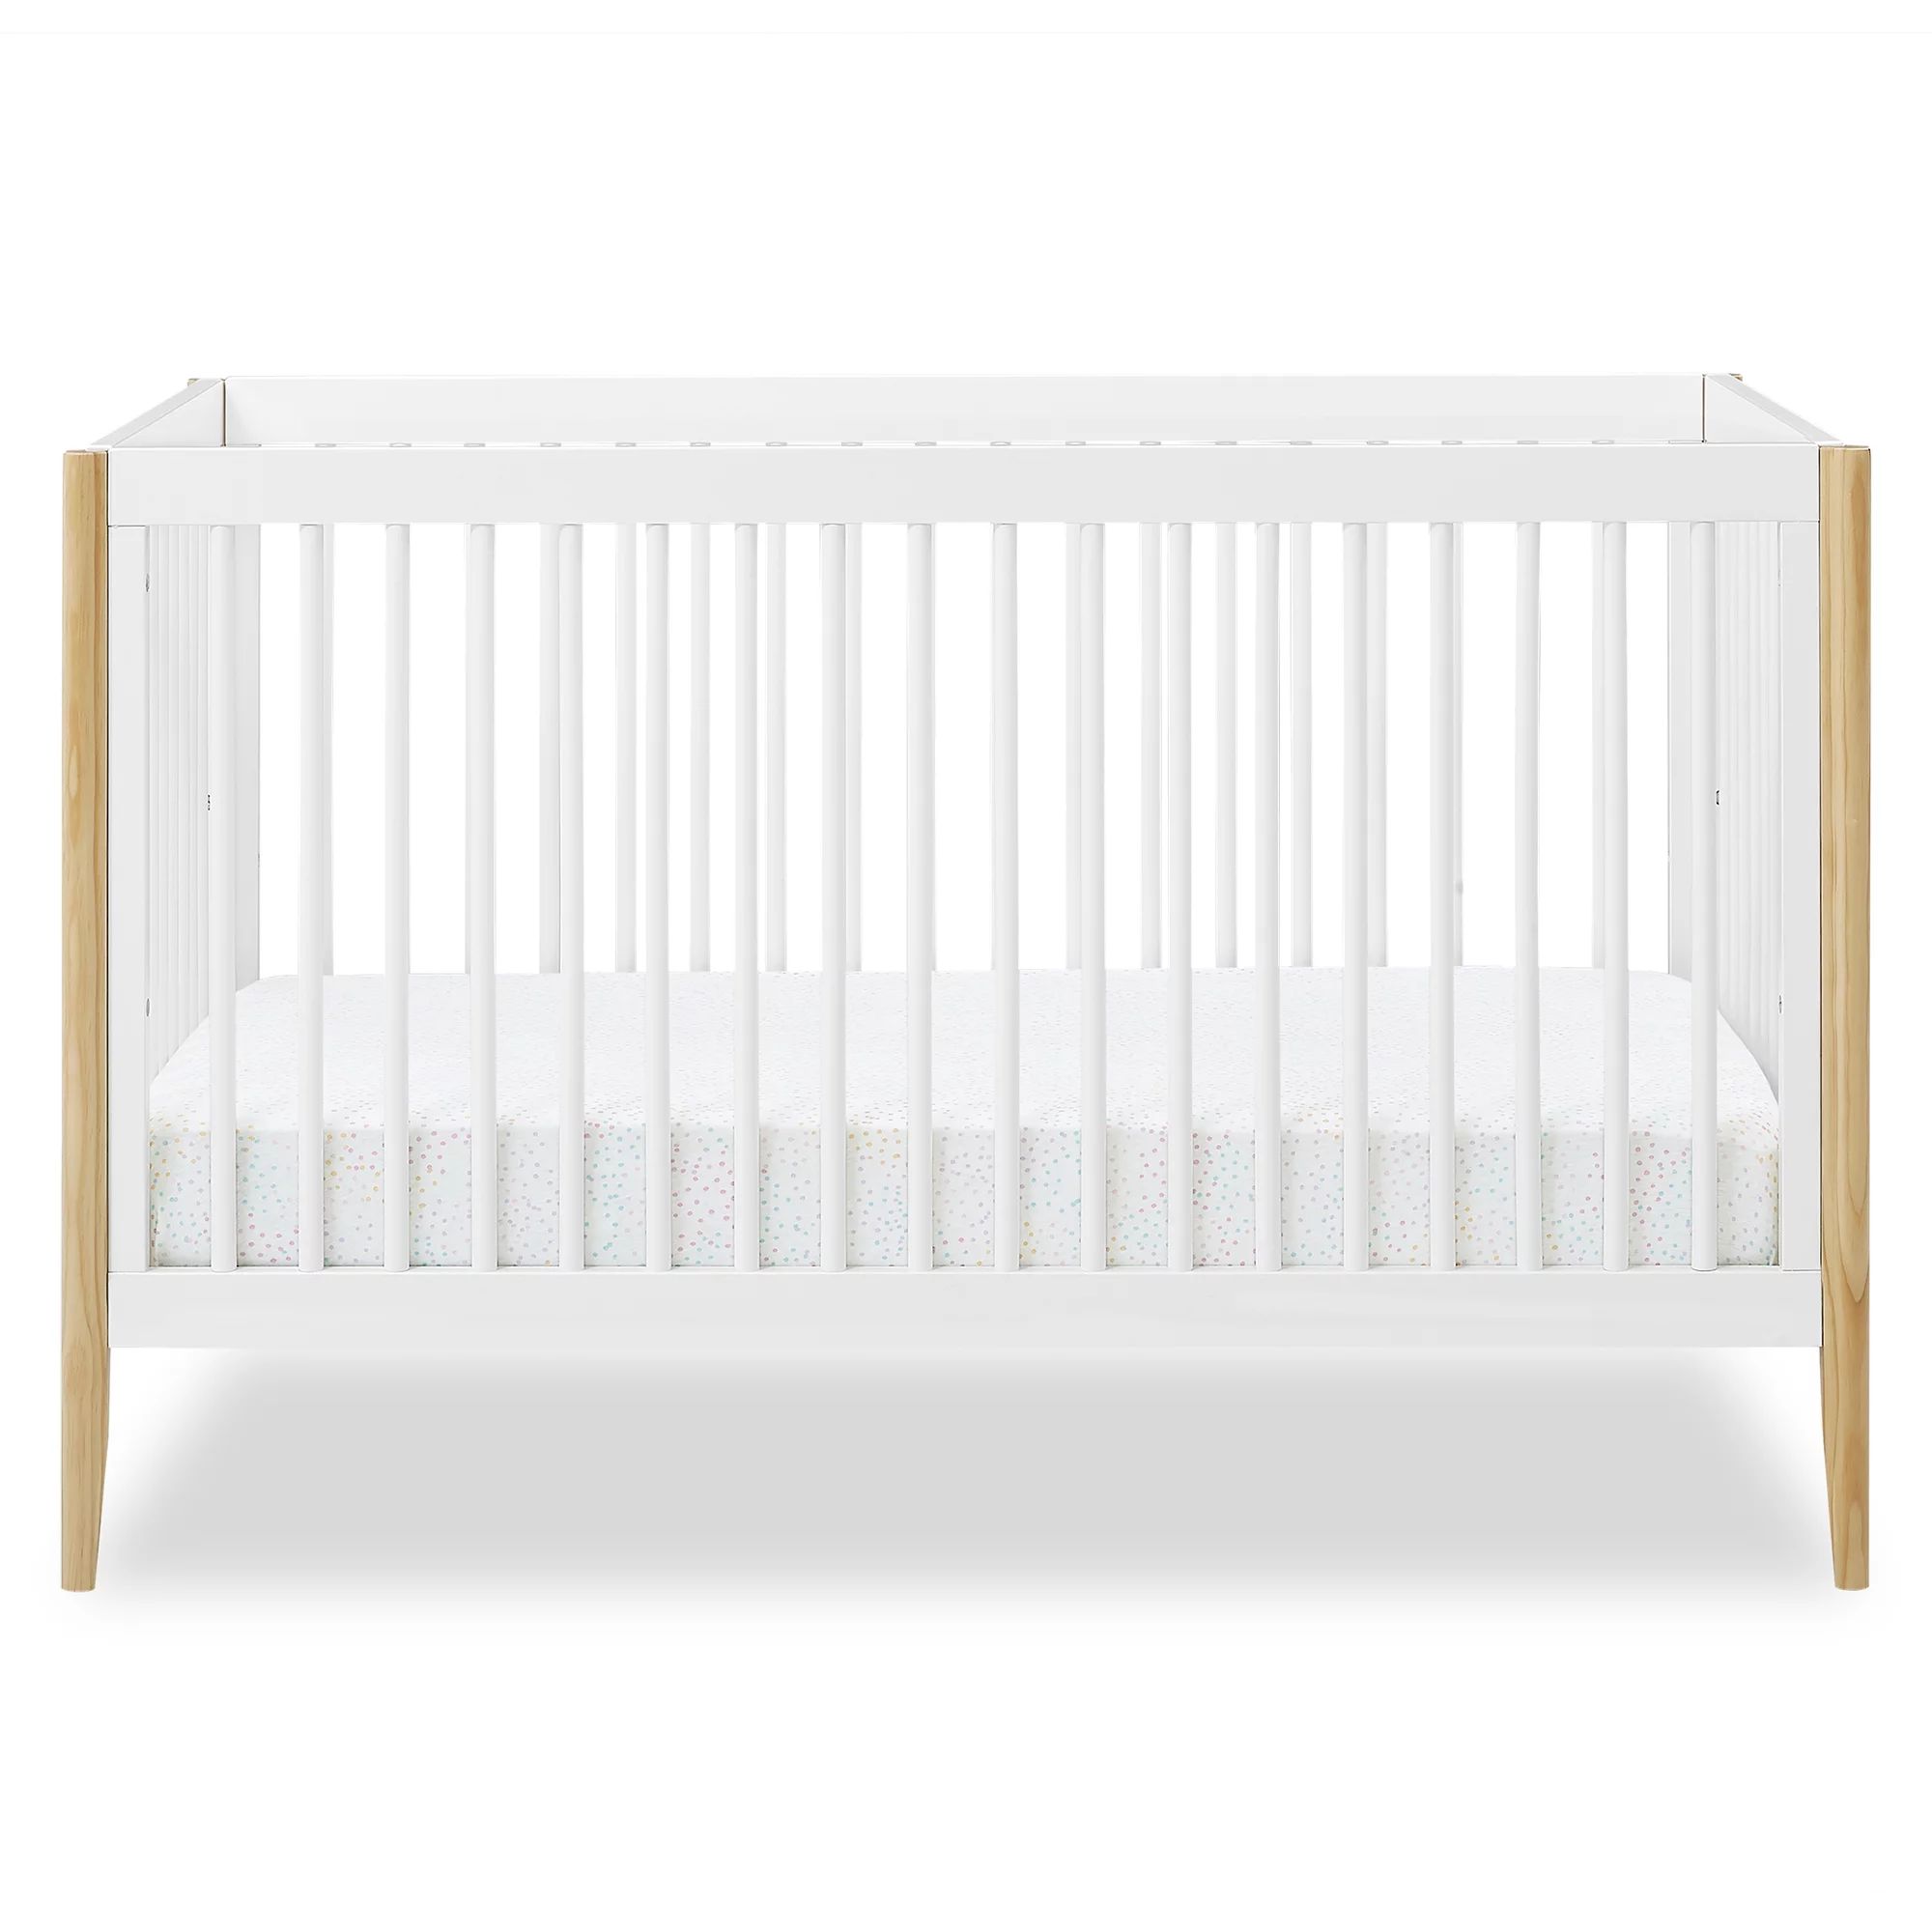 Delta Children Casey 6-in-1 Convertible Baby Crib, Bianca White/Natural | Walmart (US)